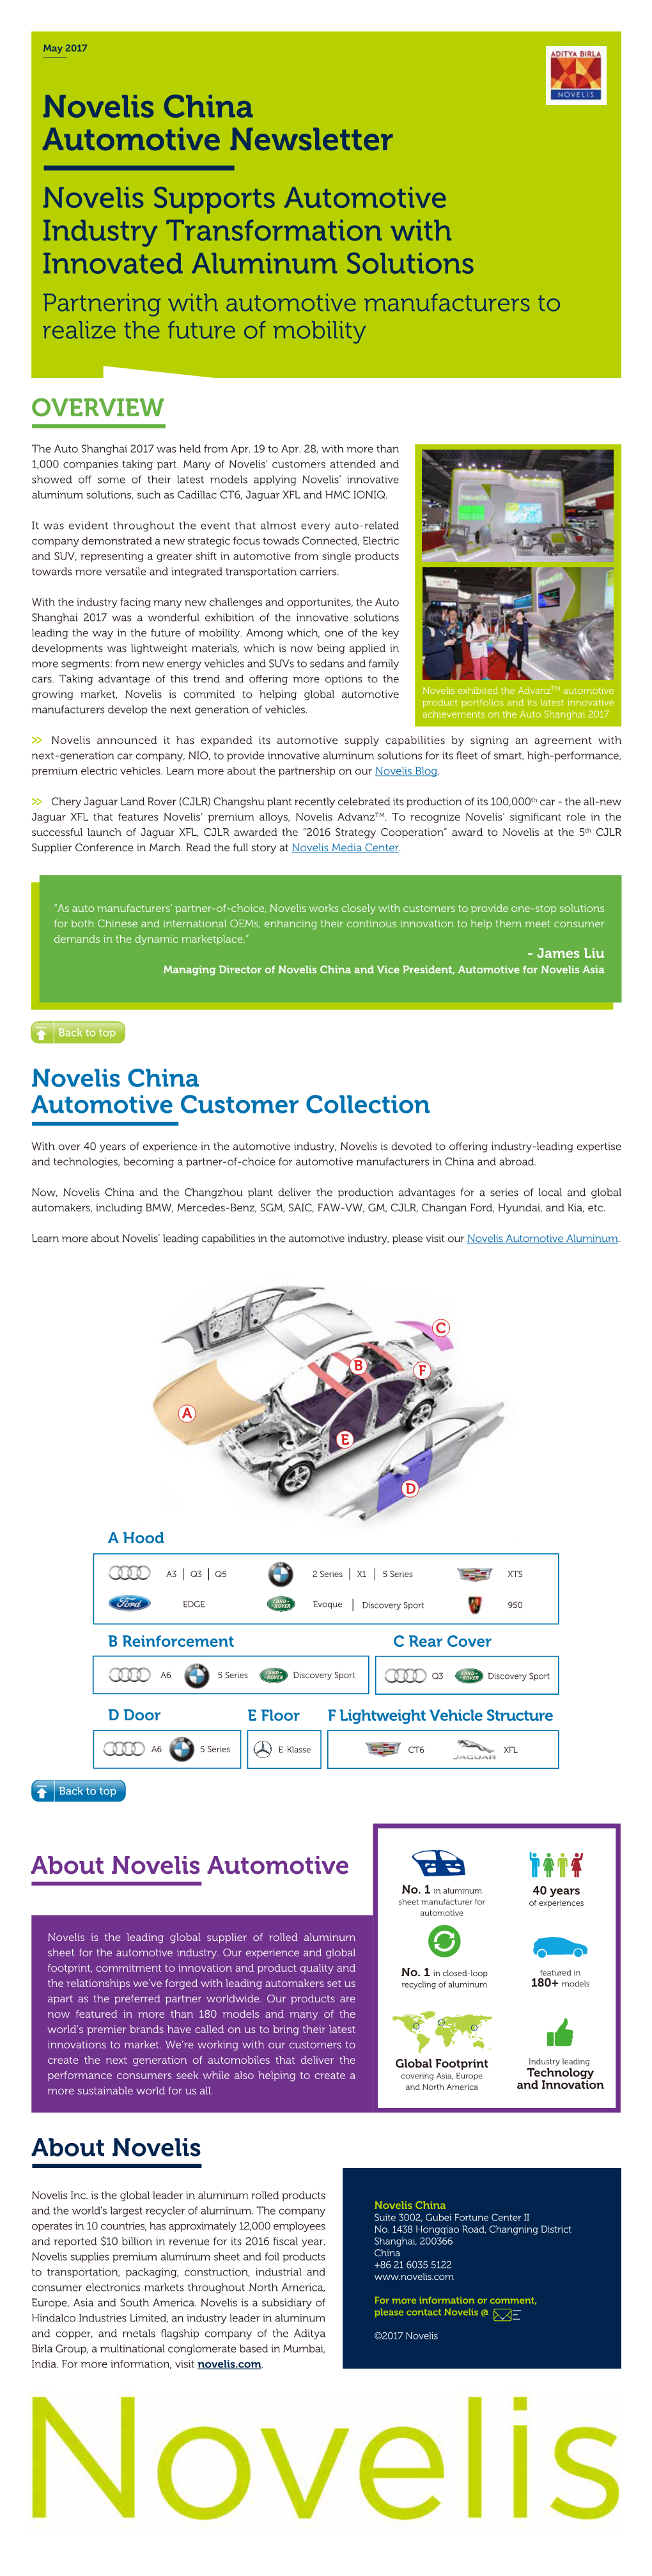 Novelis China Automotive Newsletter